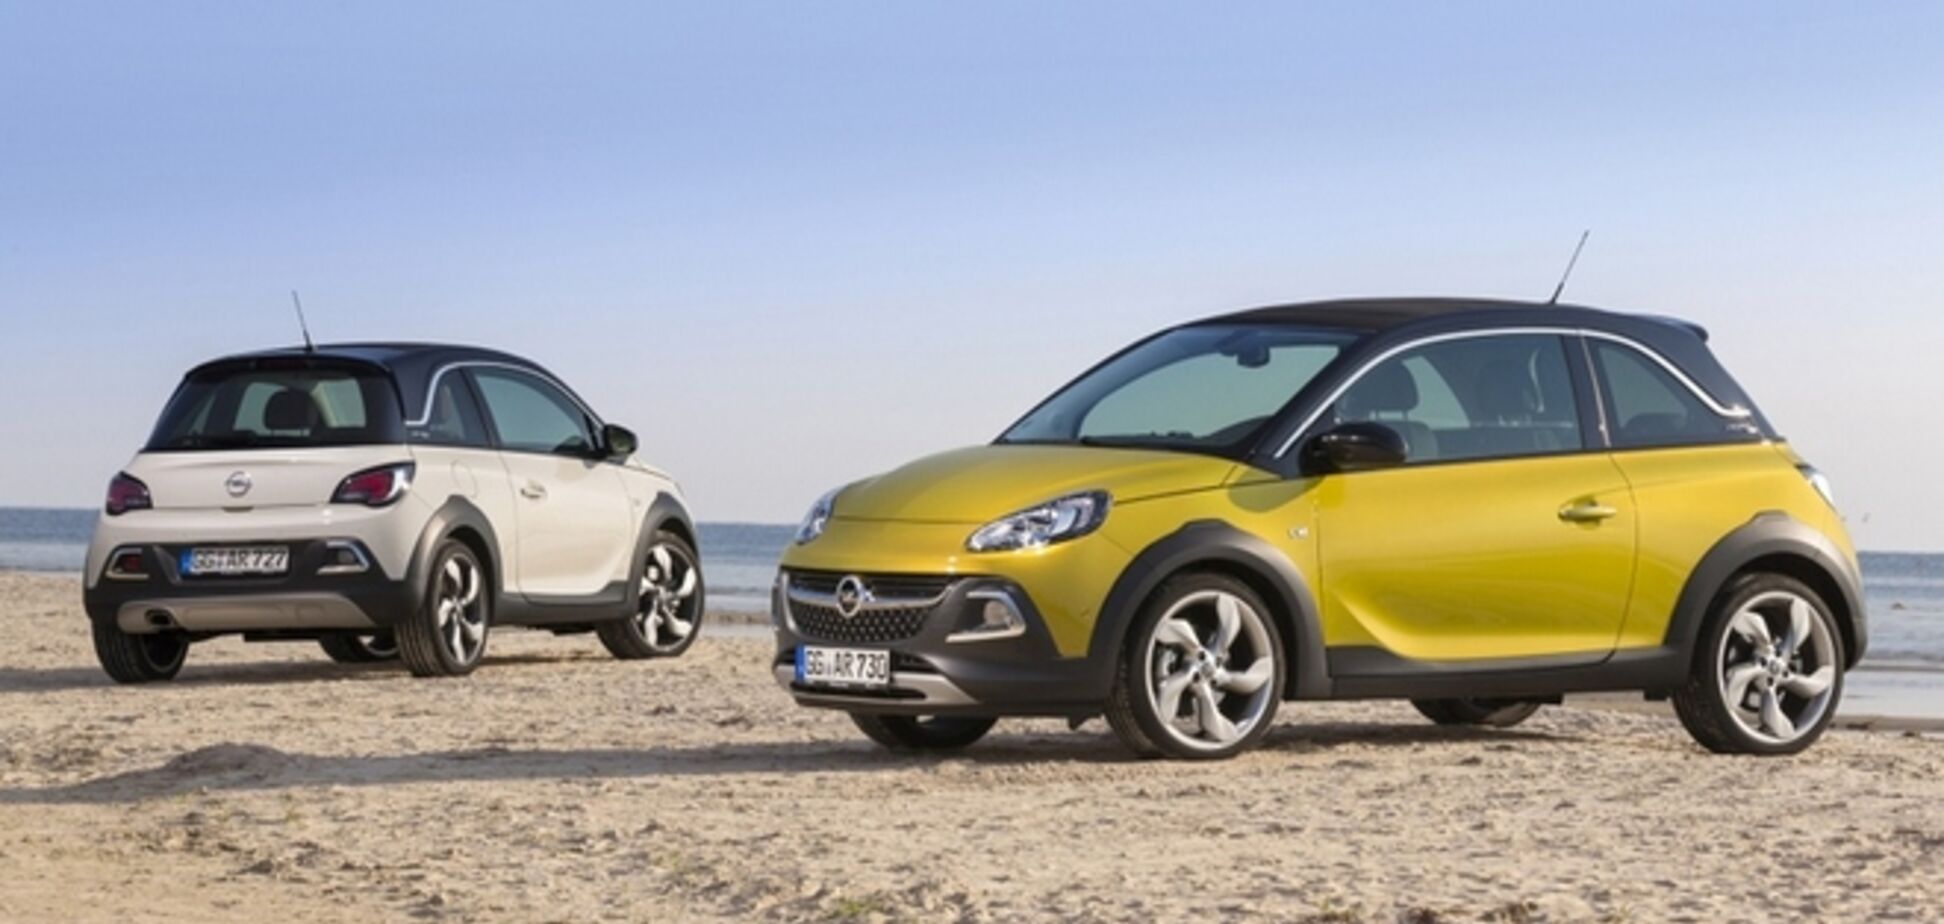 Opel відмовився продавати в Росії свої нові моделі авто